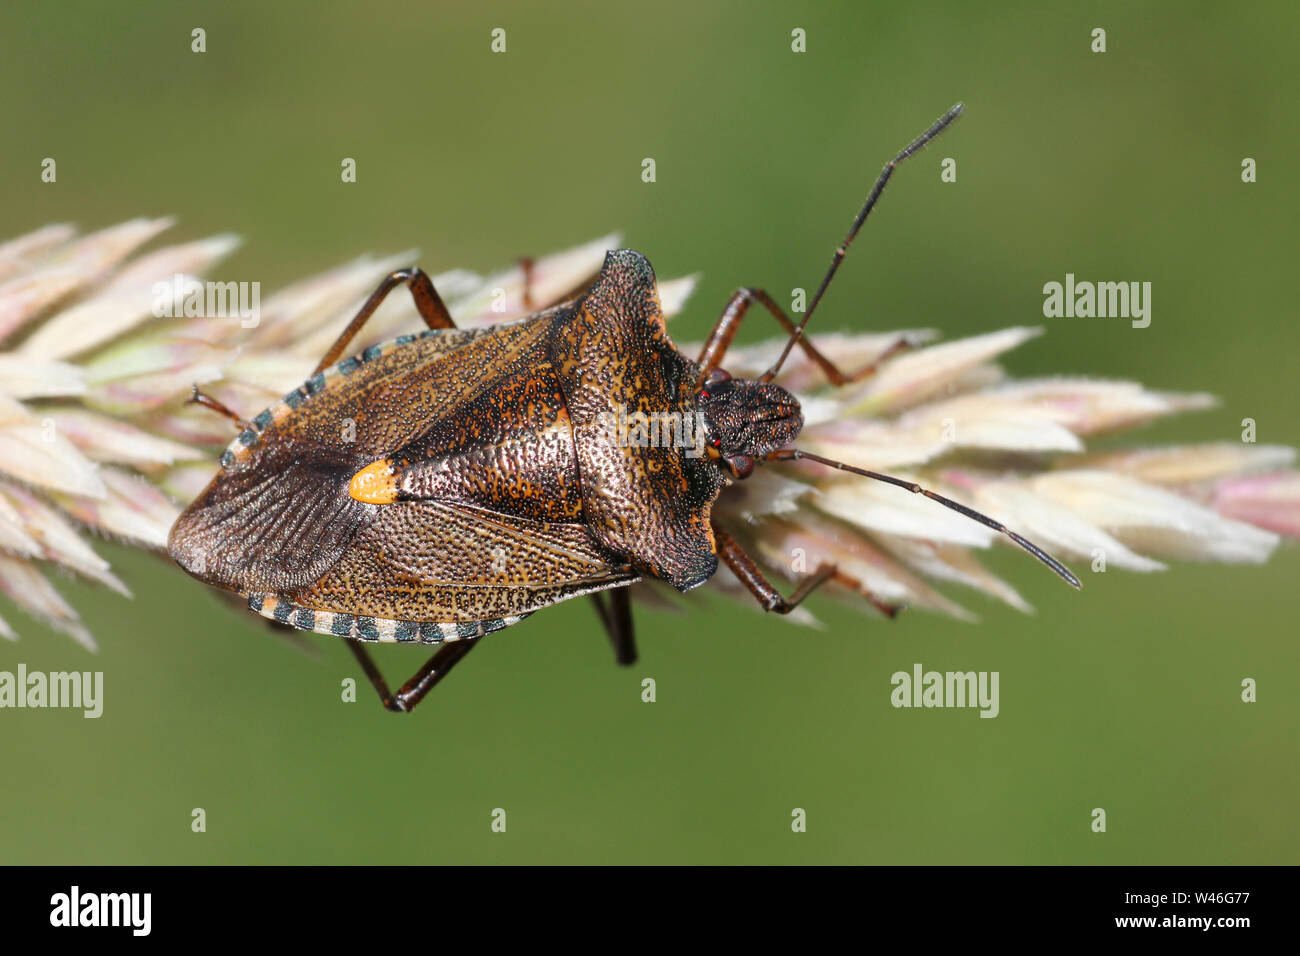 Bug de bosque o de patas rojas, Shieldbug Pentatoma rufipes Foto de stock